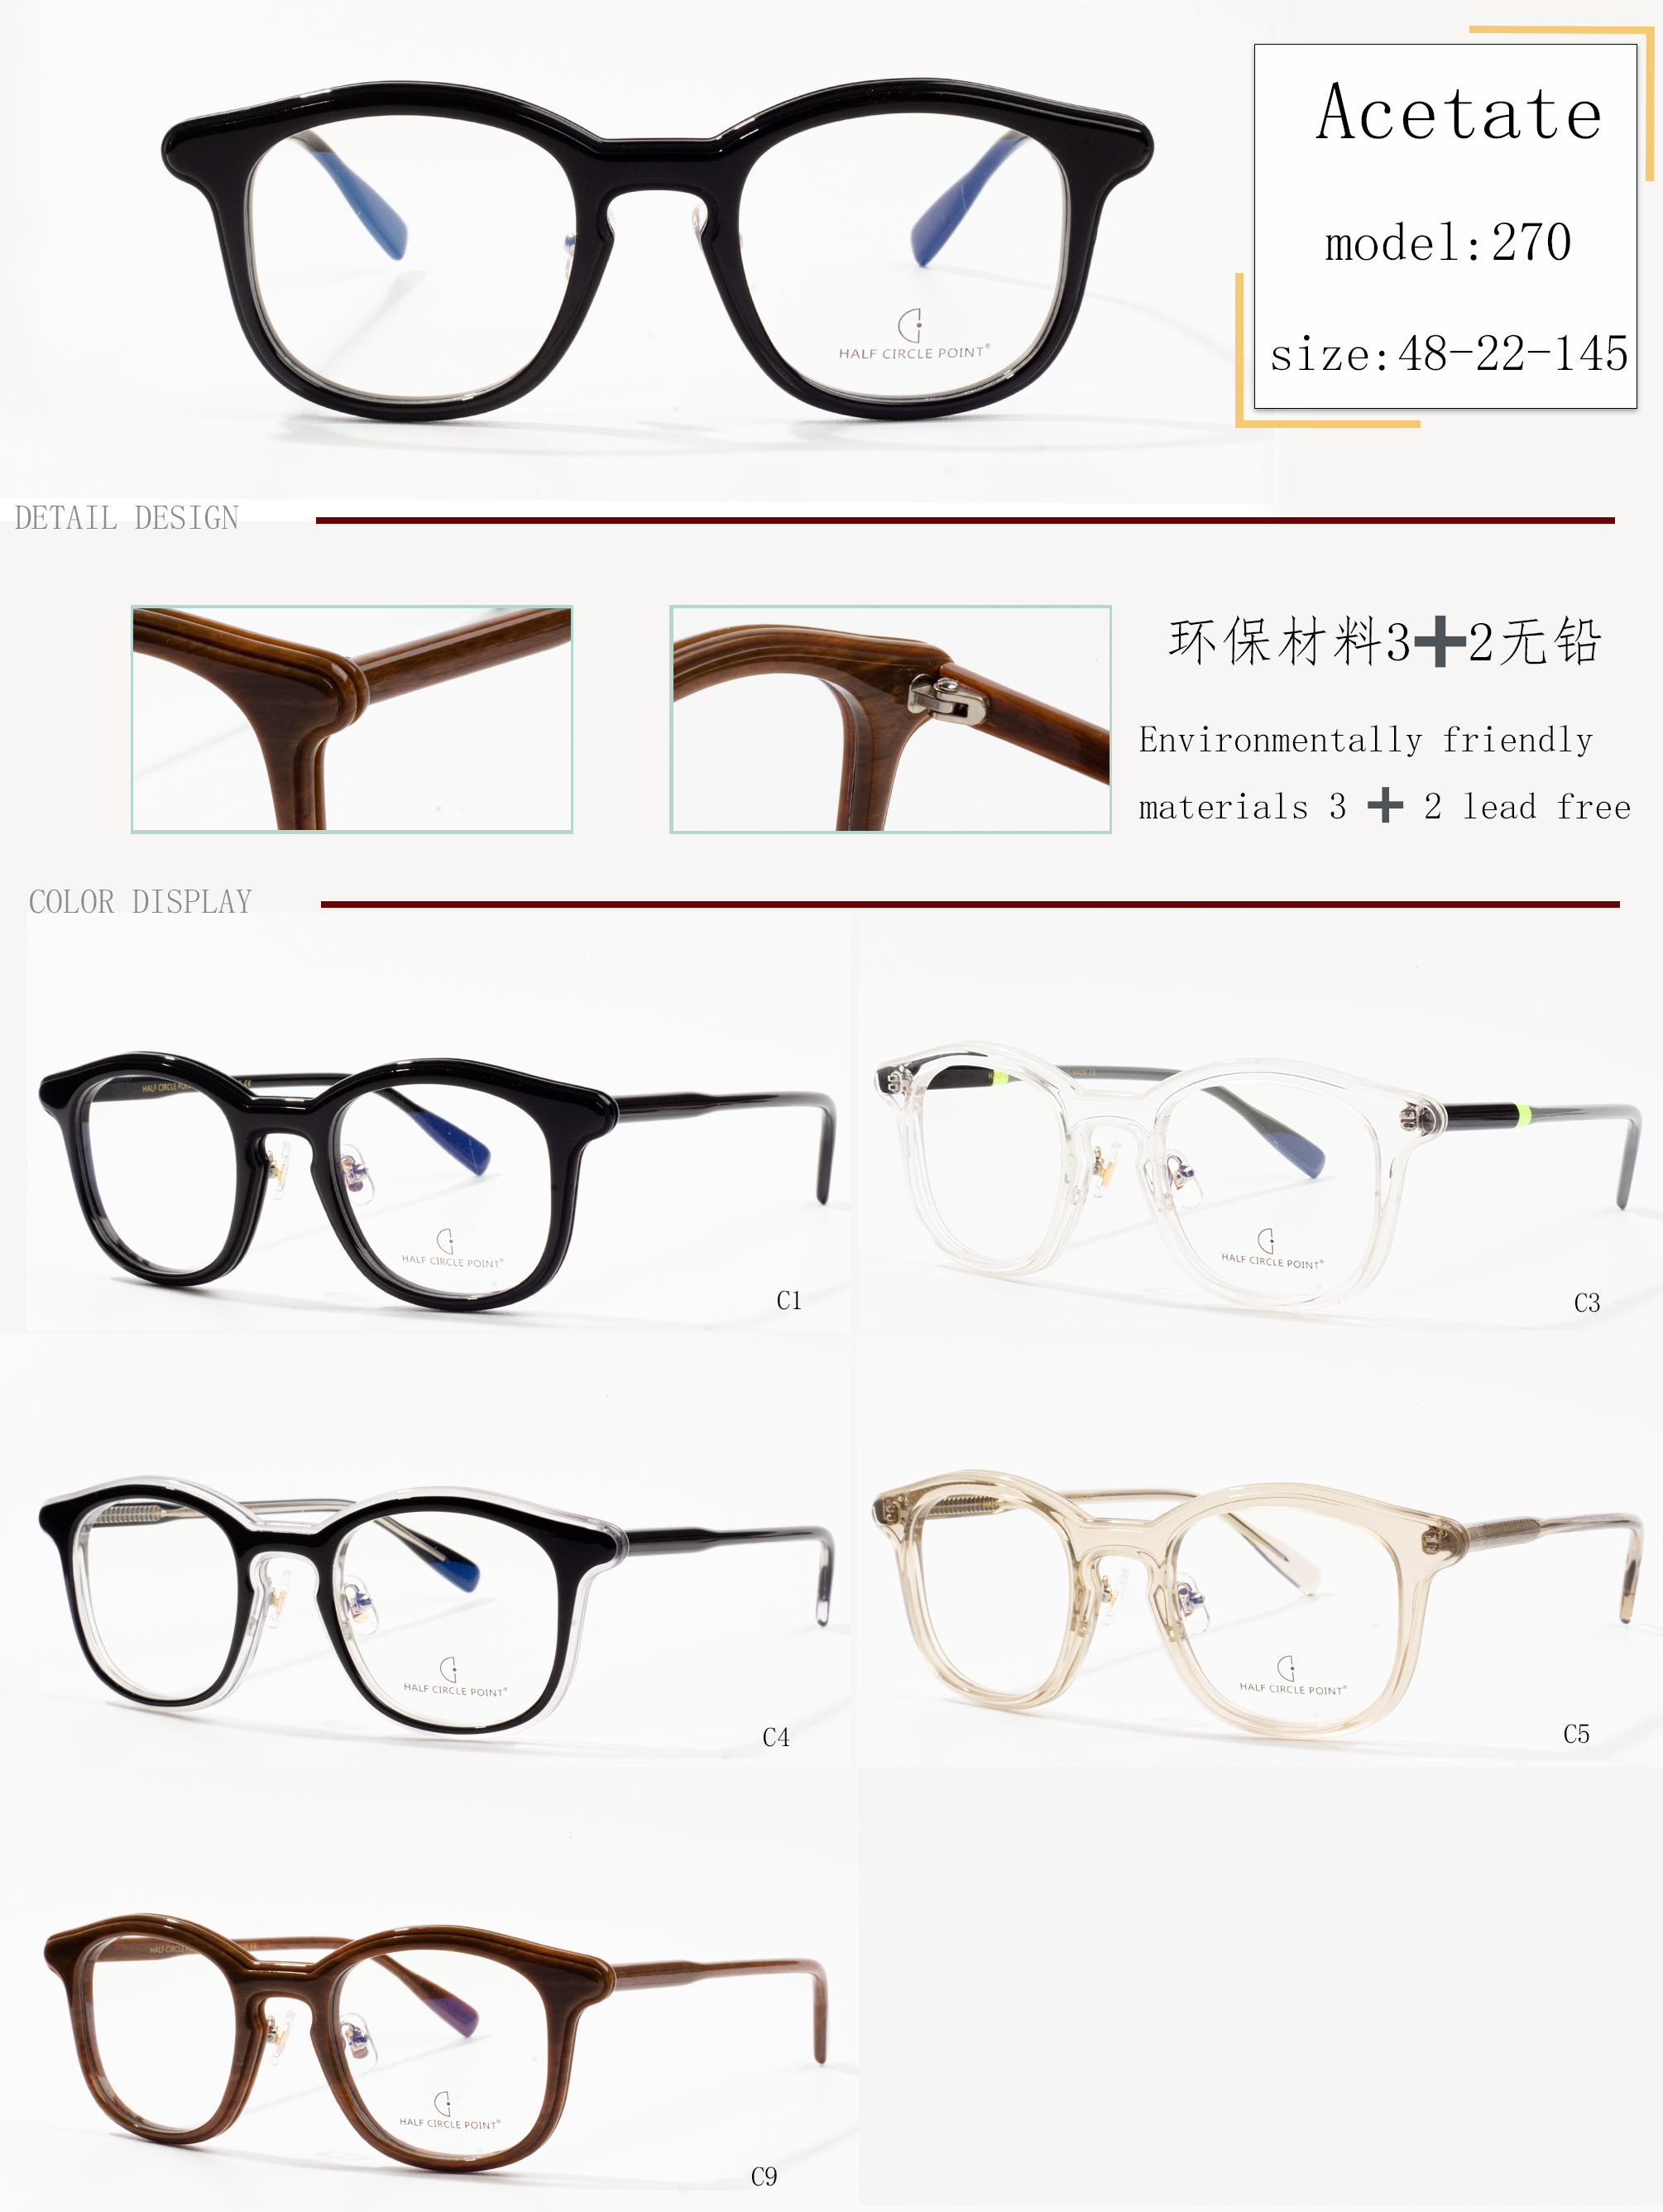 gambar frame kacamata